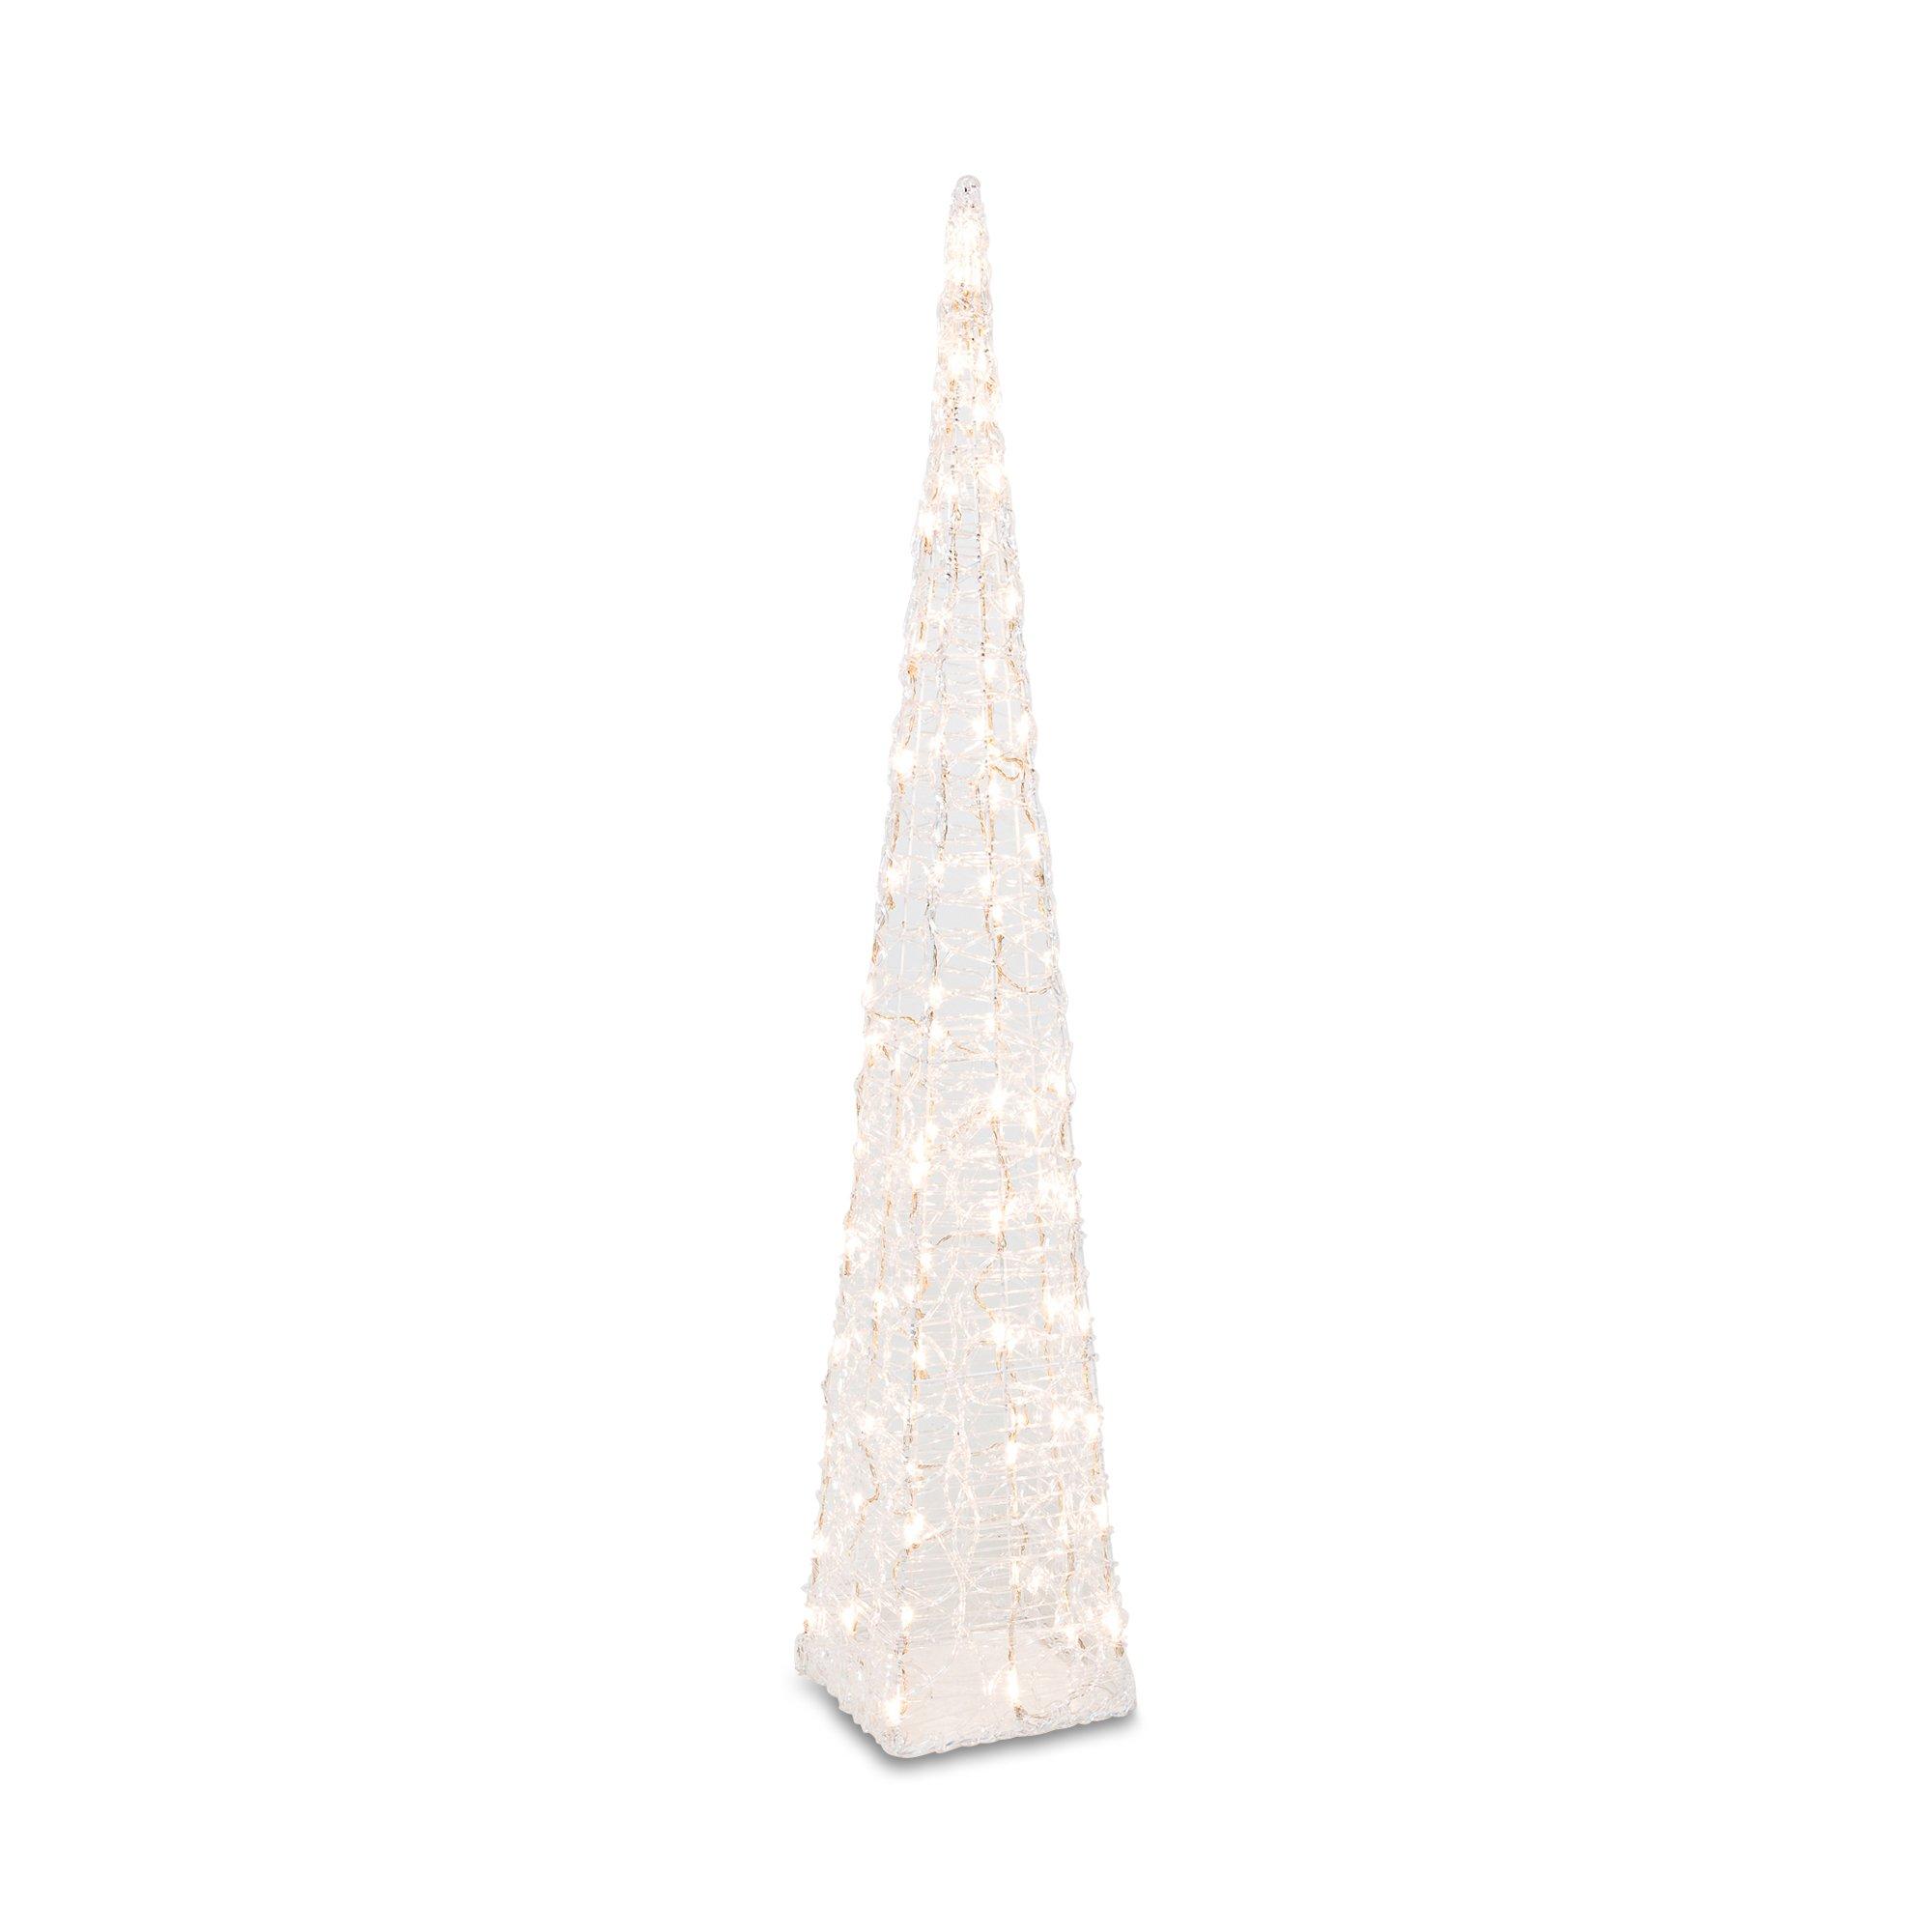 NA LED Dekorationsartikel | online LED MANOR H118cm Pyramide - kaufen